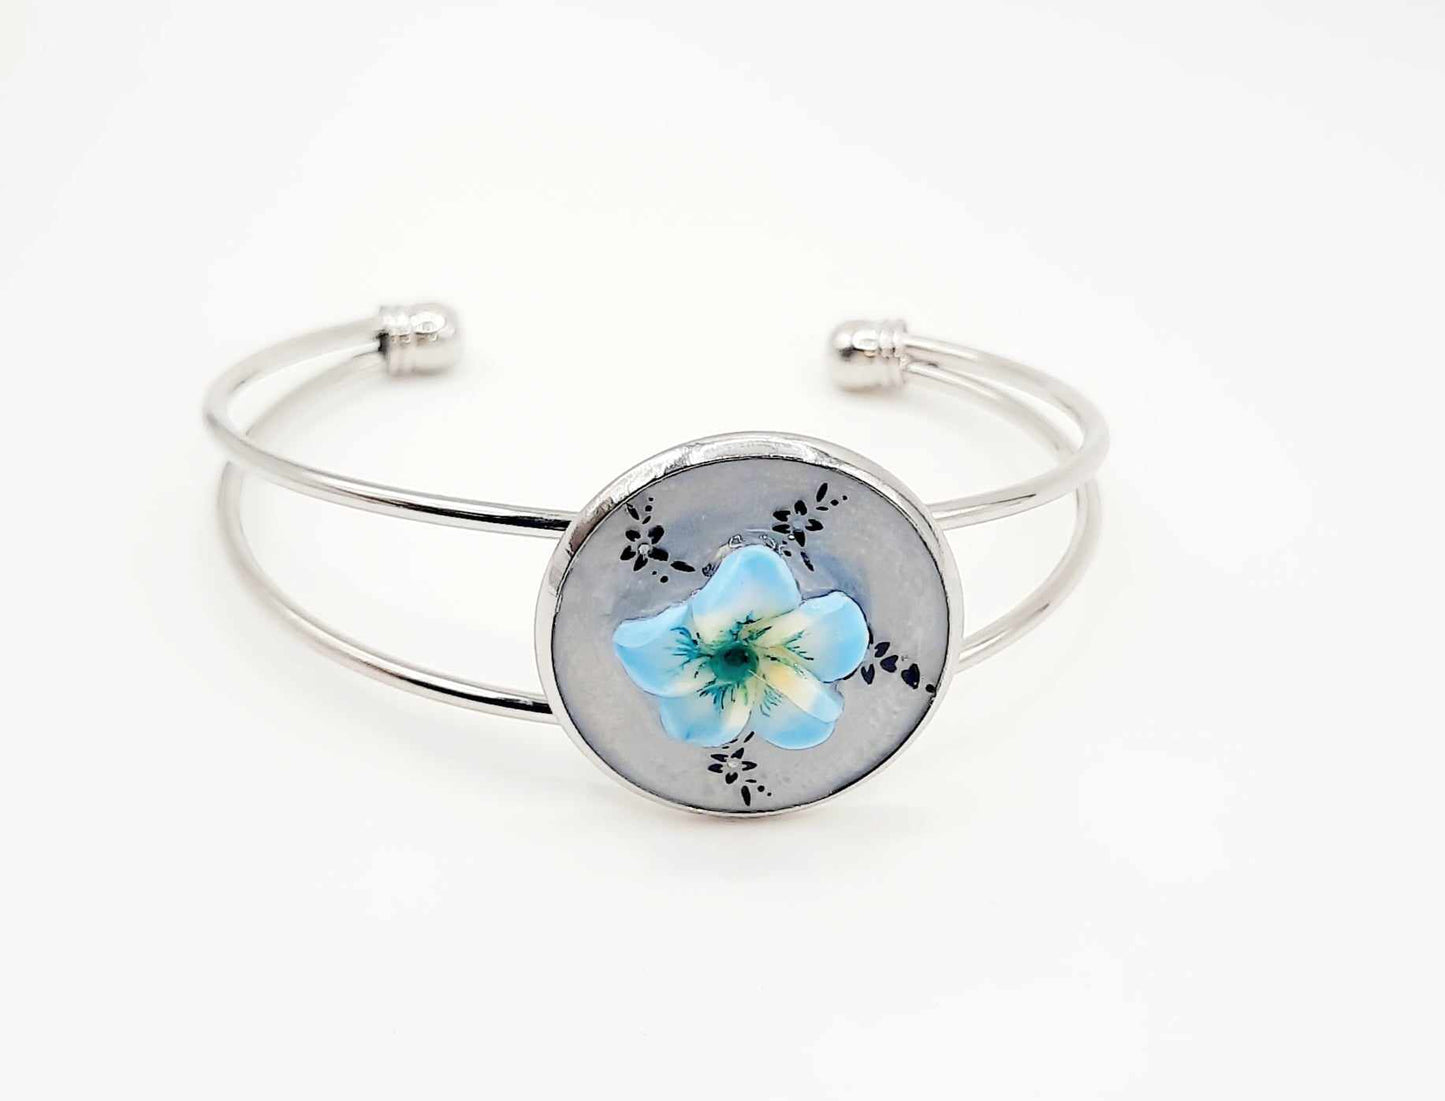 Adjustable handcrafted blue polymer flower cuff bracelet